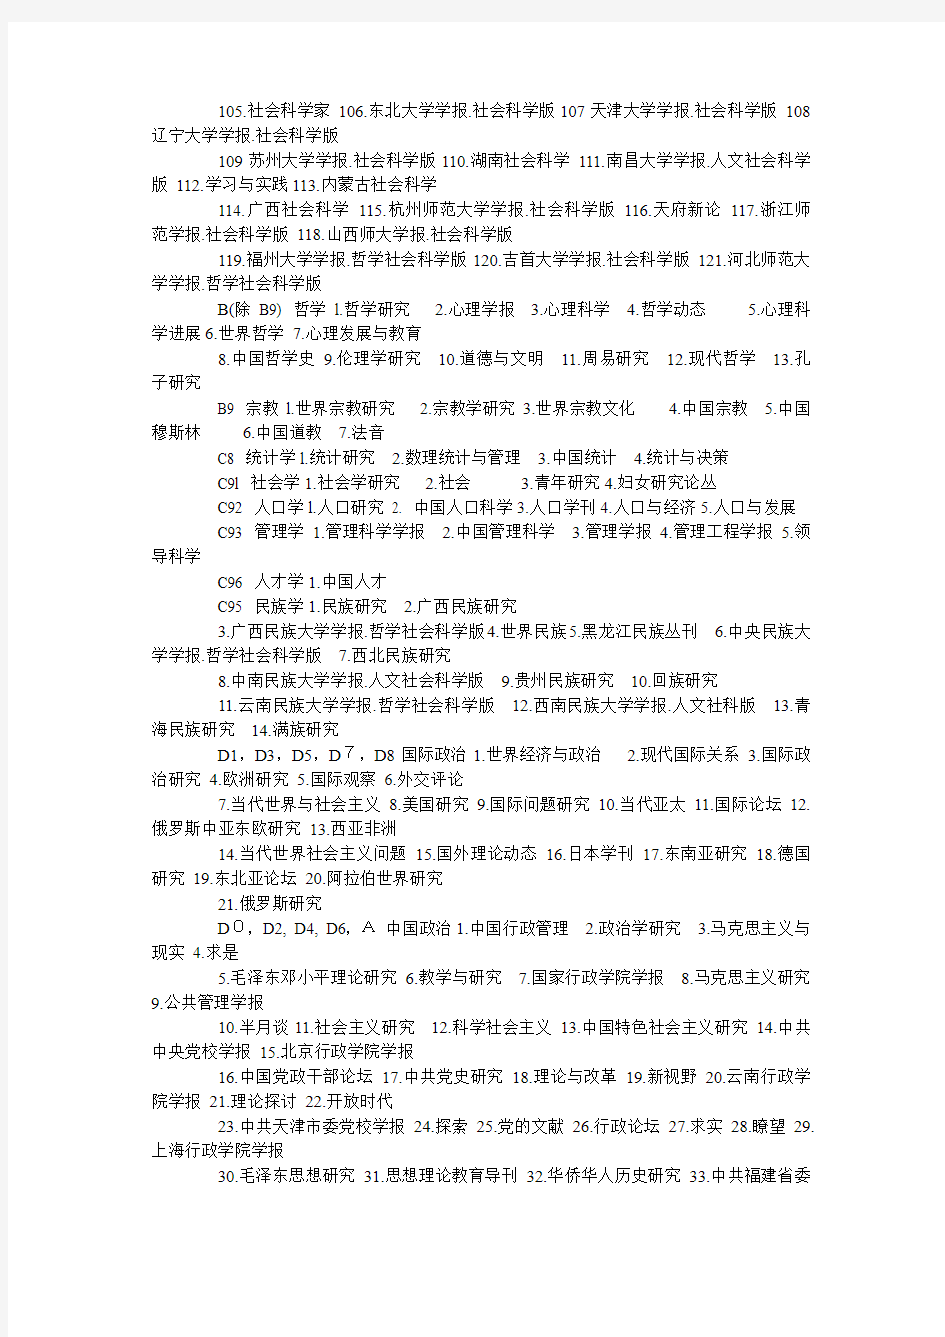 2011版北大中文核心期刊要目总览(CSSCI)